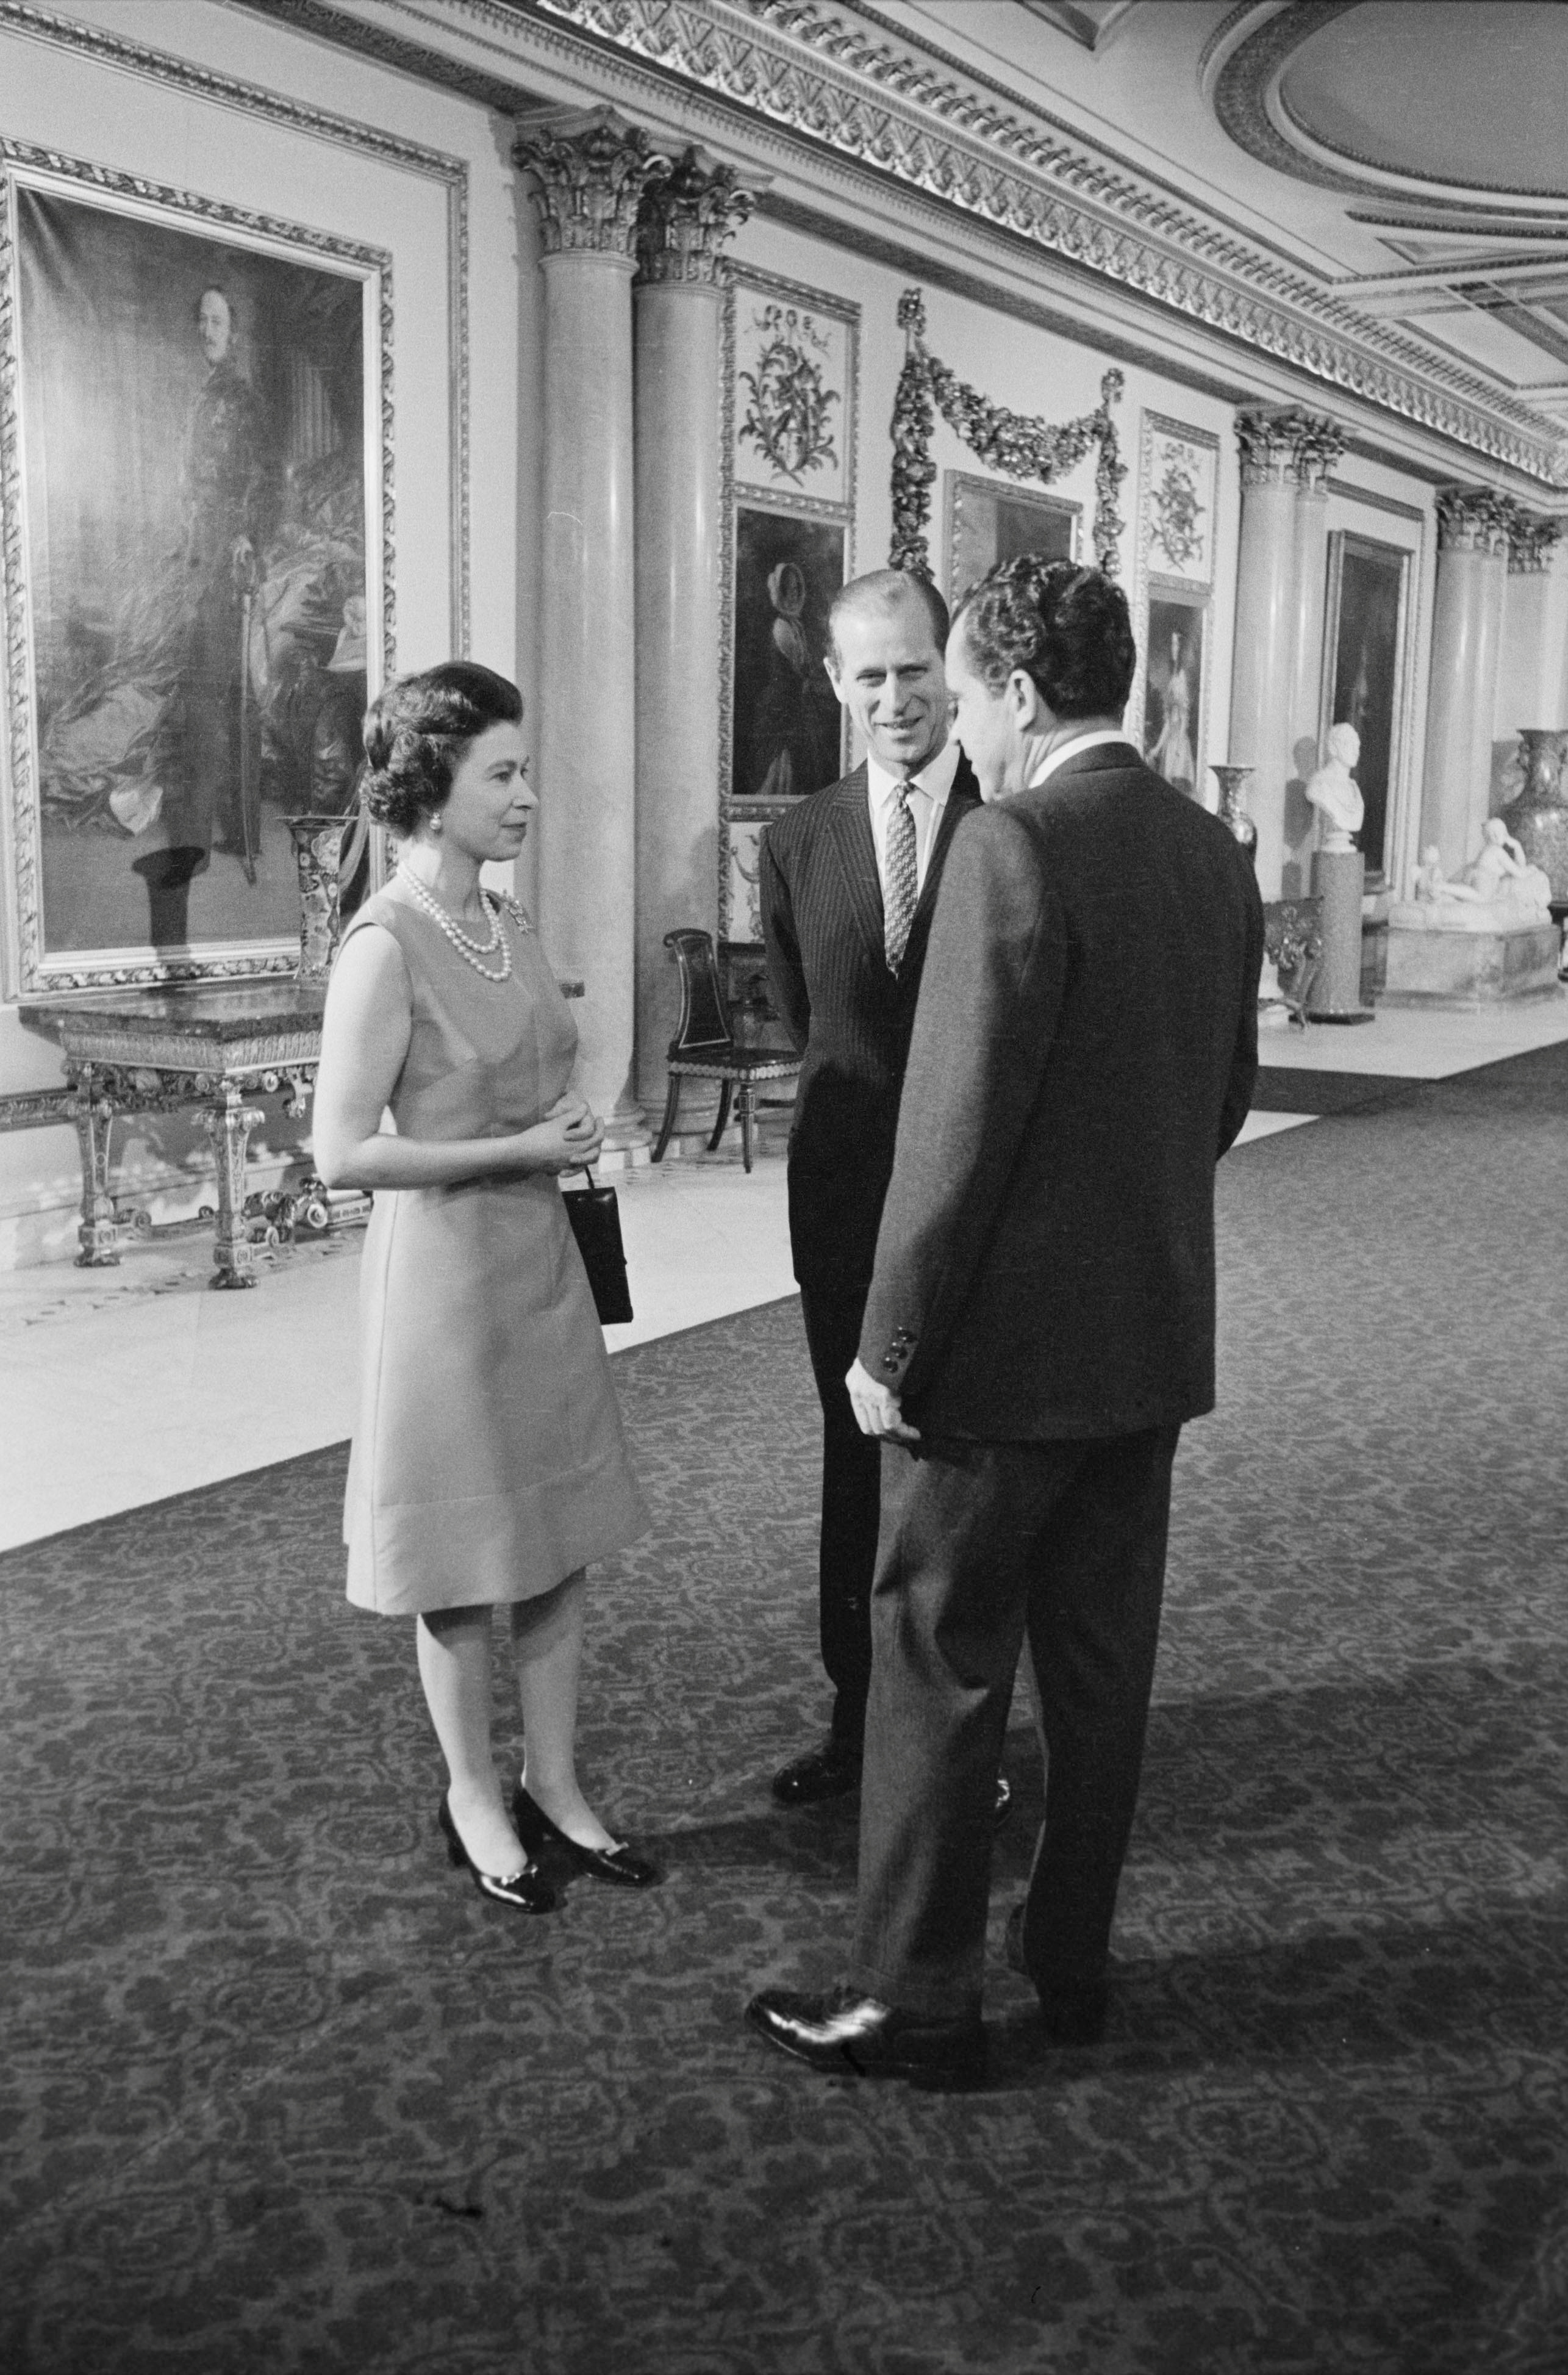 El presidente estadounidense Richard Nixon, la reina Isabel II y el príncipe Felipe recorren en el Palacio de Buckingham en Londre. Fotografía tomada en febrero de 1969